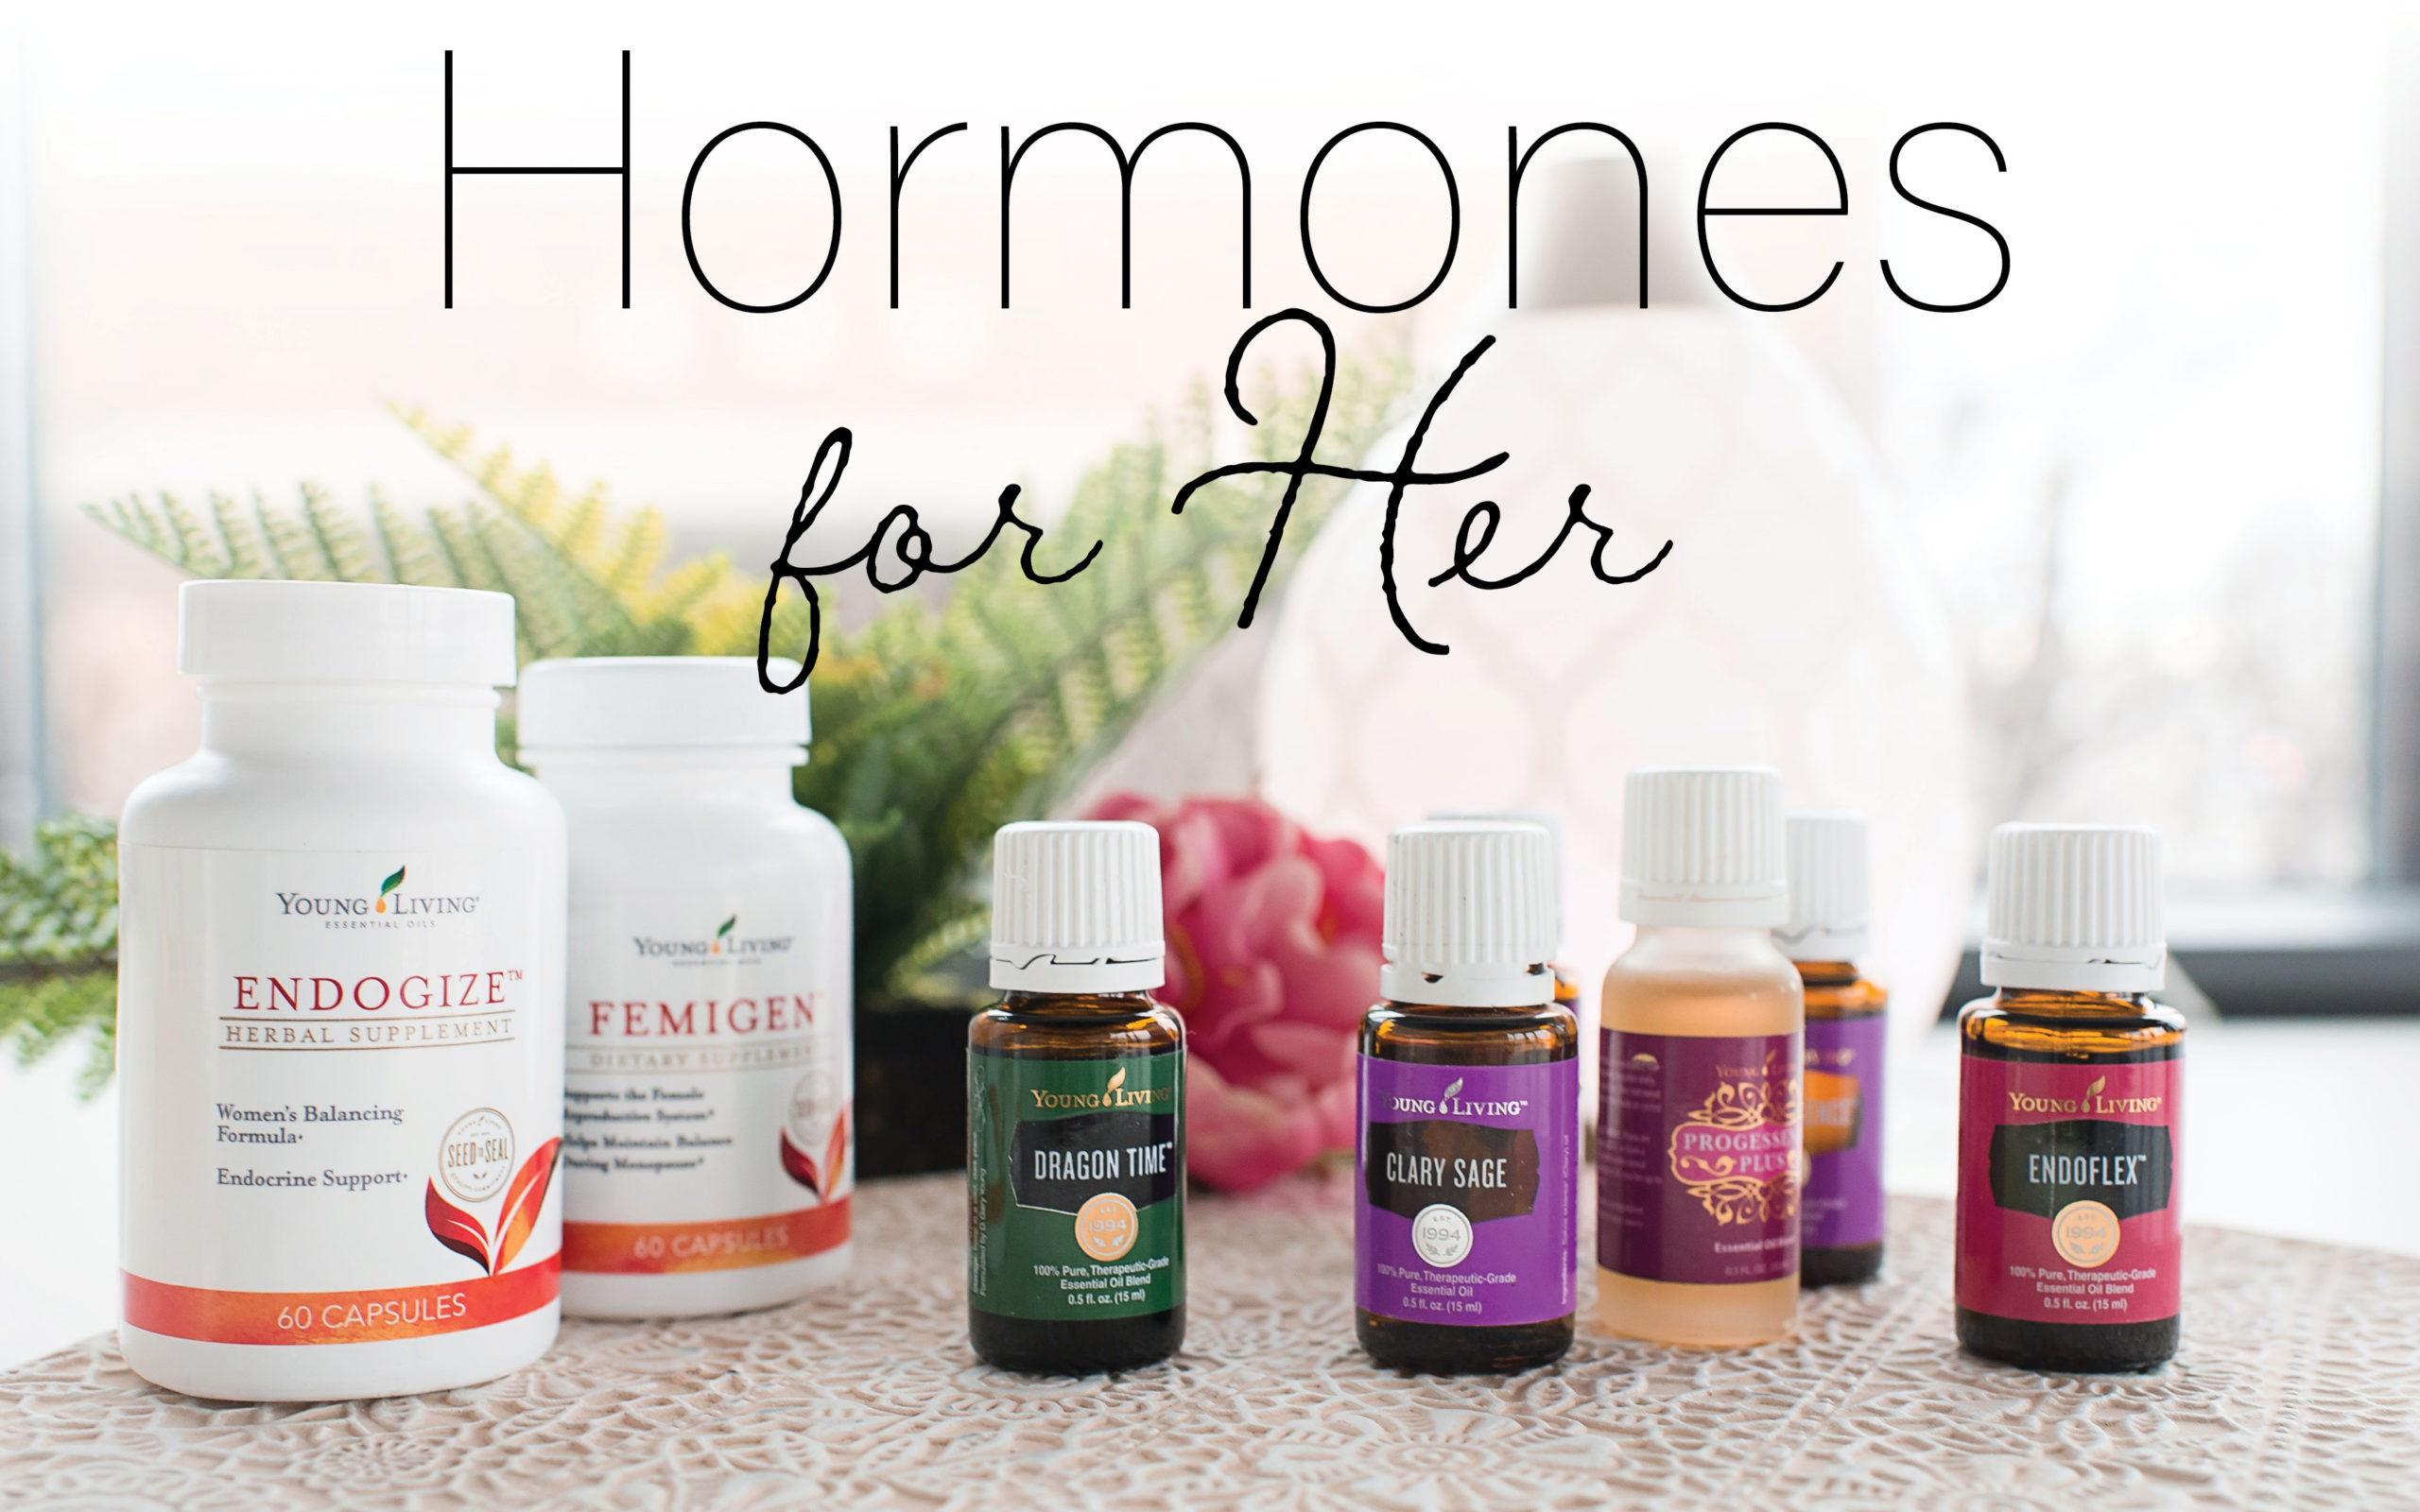 Hormones from Her